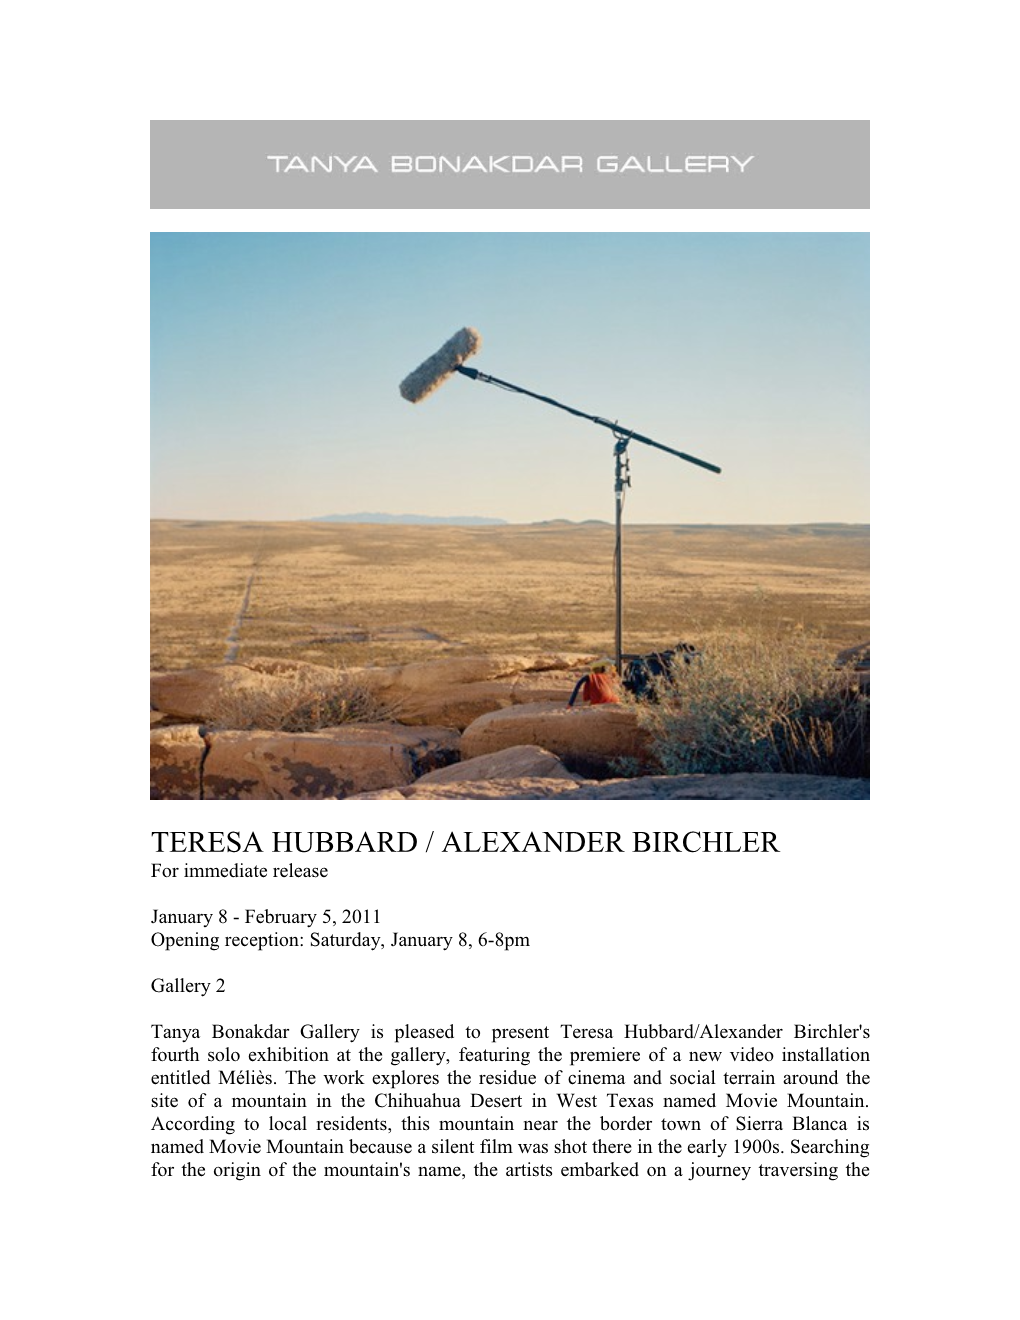 Teresa Hubbard / Alexander Birchler